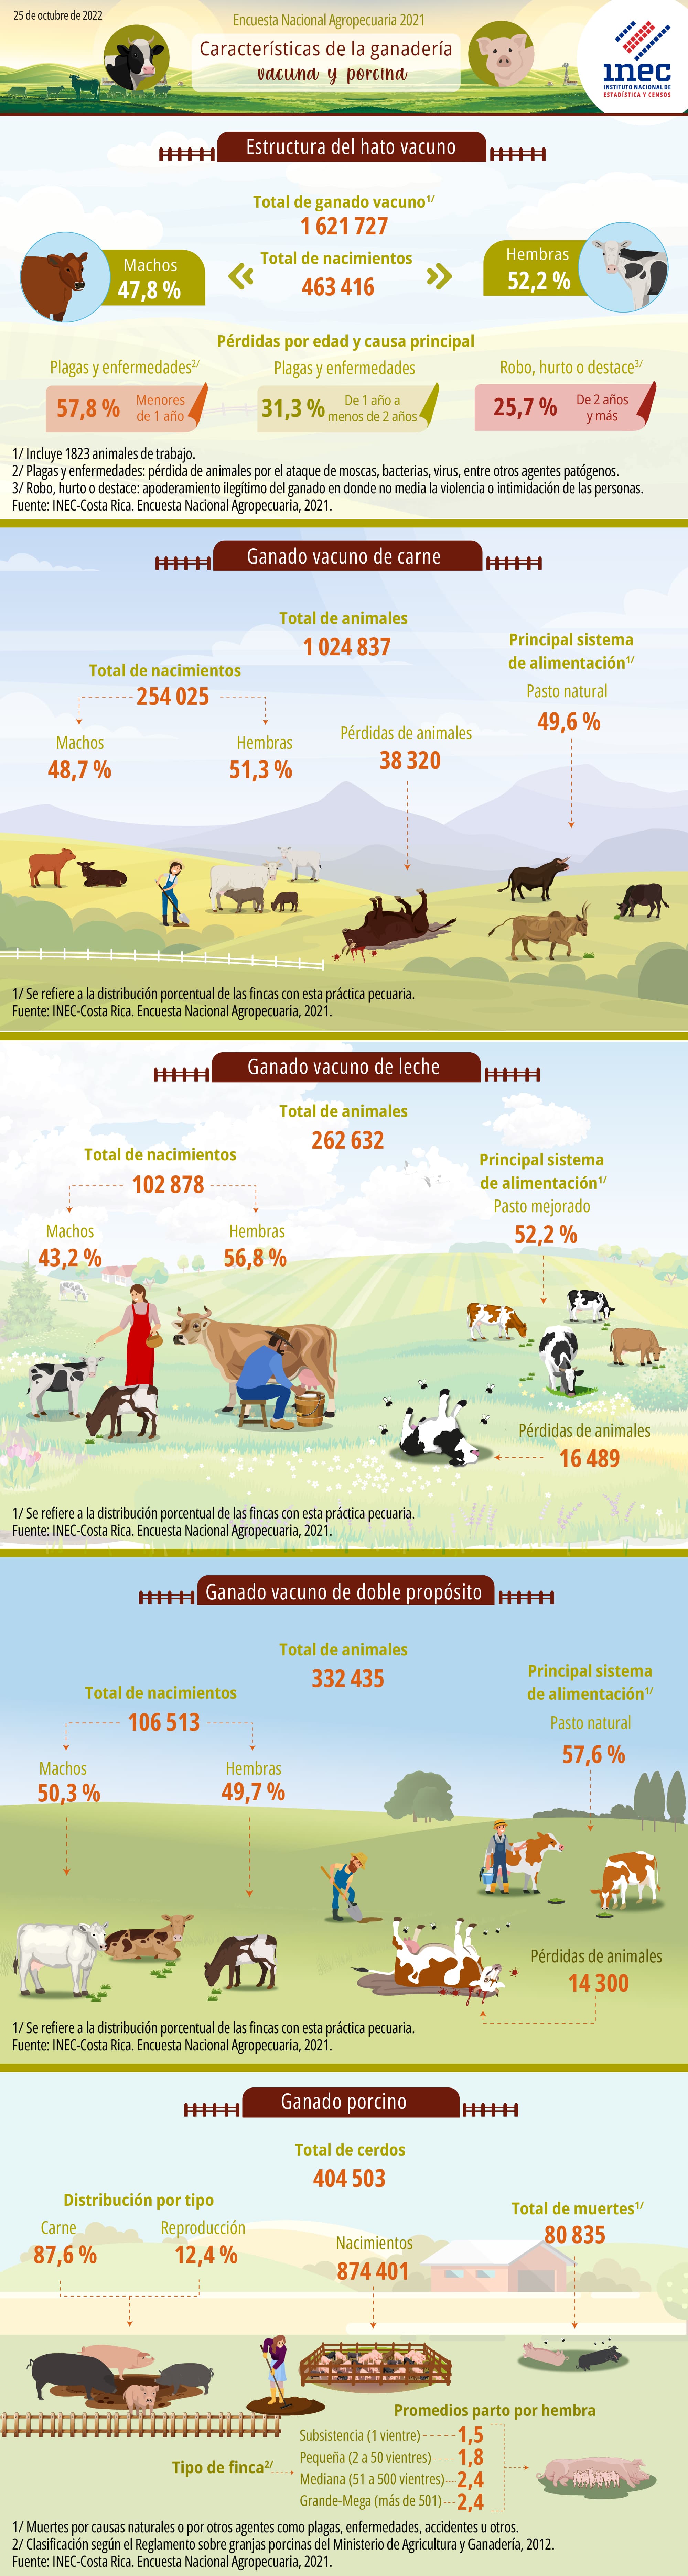 ENA 2021. Infografía. Características de la  ganadería vacuna y porcina en Costa Rica.